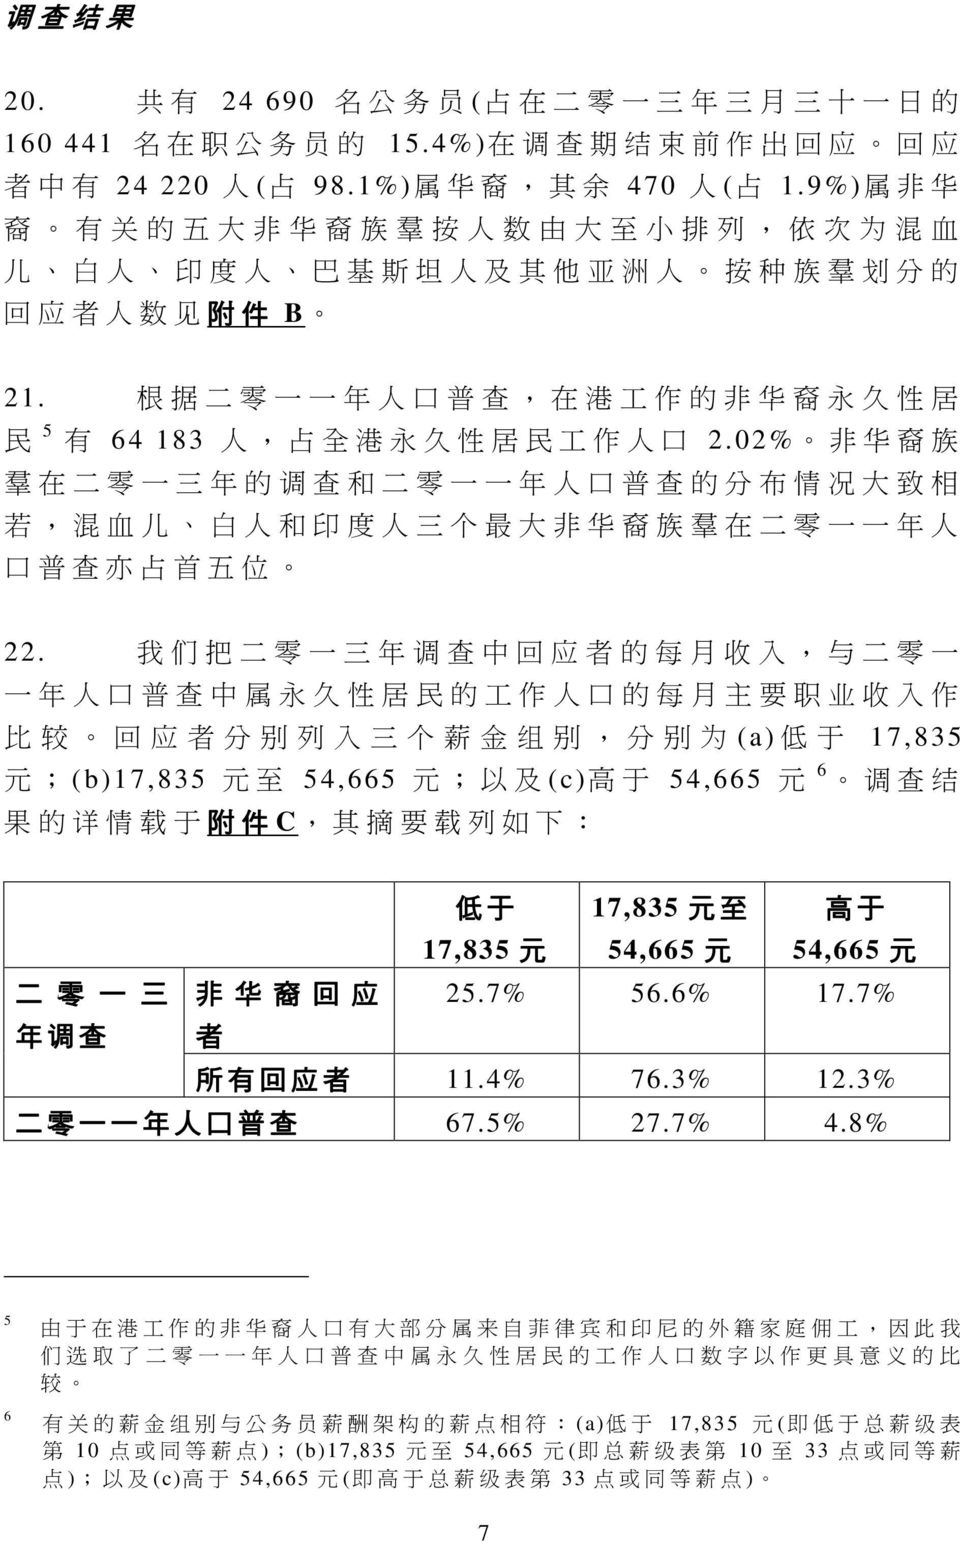 根 据 二 零 一 一 年 人 口 普 查, 在 港 工 作 的 非 华 裔 永 久 性 居 民 5 有 64 183 人, 占 全 港 永 久 性 居 民 工 作 人 口 2.